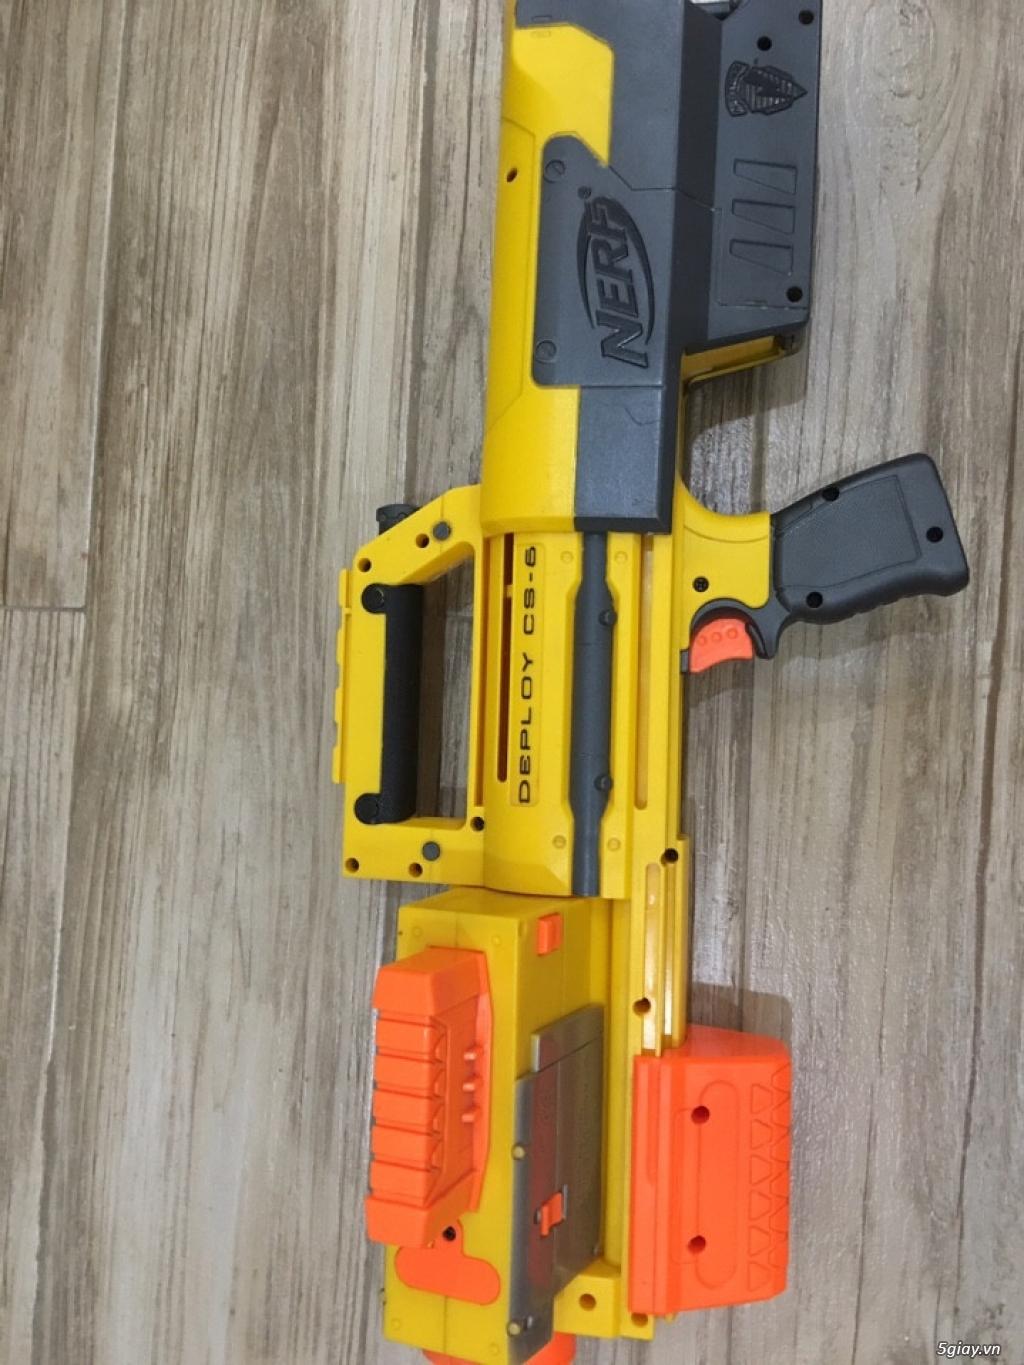 Nerf gun đồ chơi an toàn từ USA, Giá Rẻ!!! | 5giay